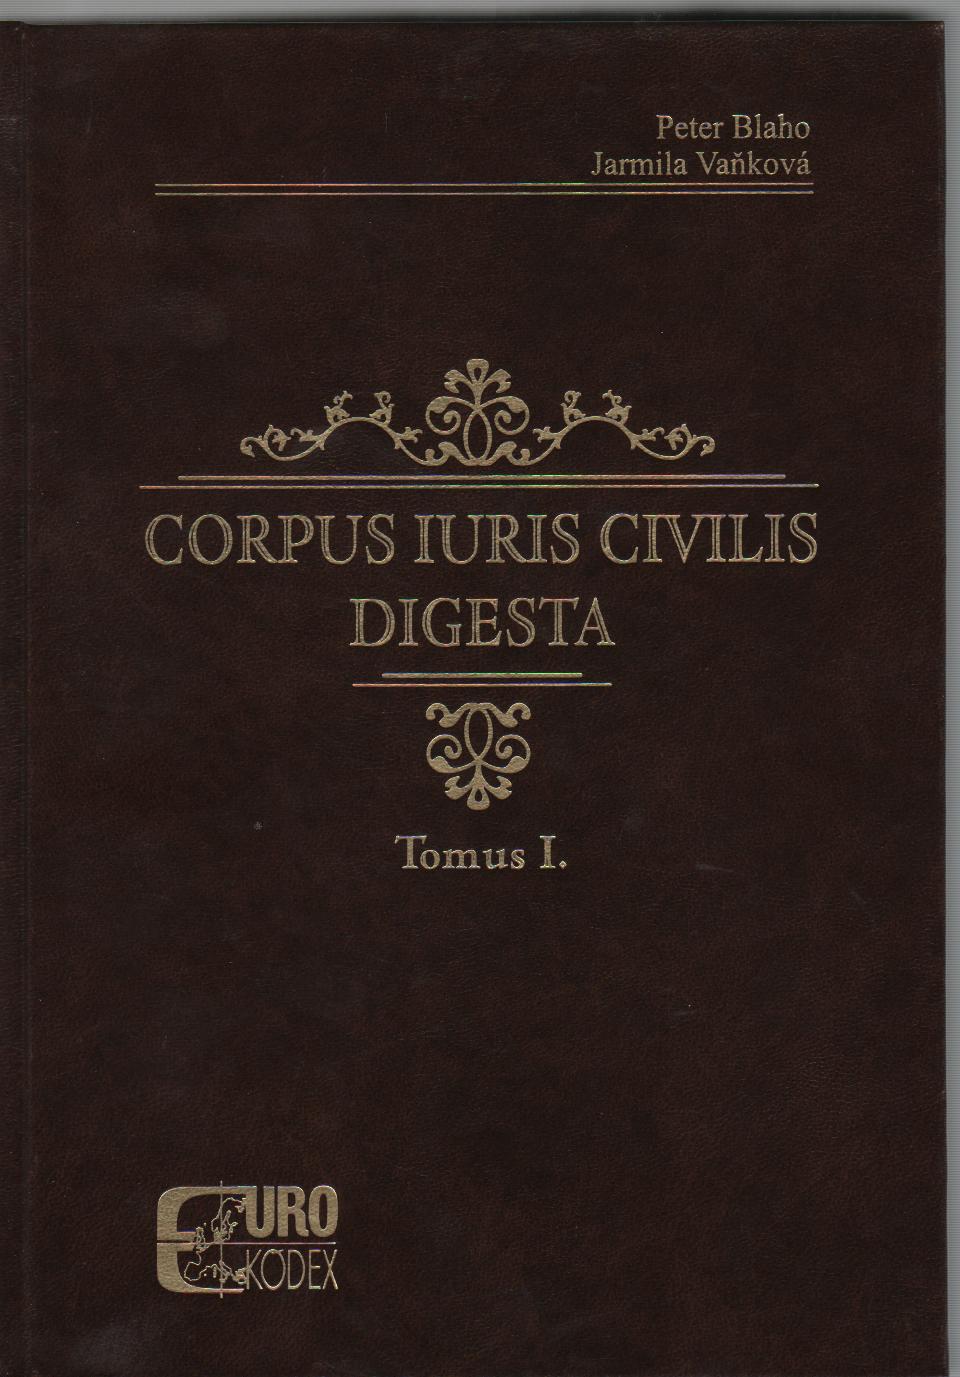 Corpus Iuris Civilis. Digesta. Tomus I.